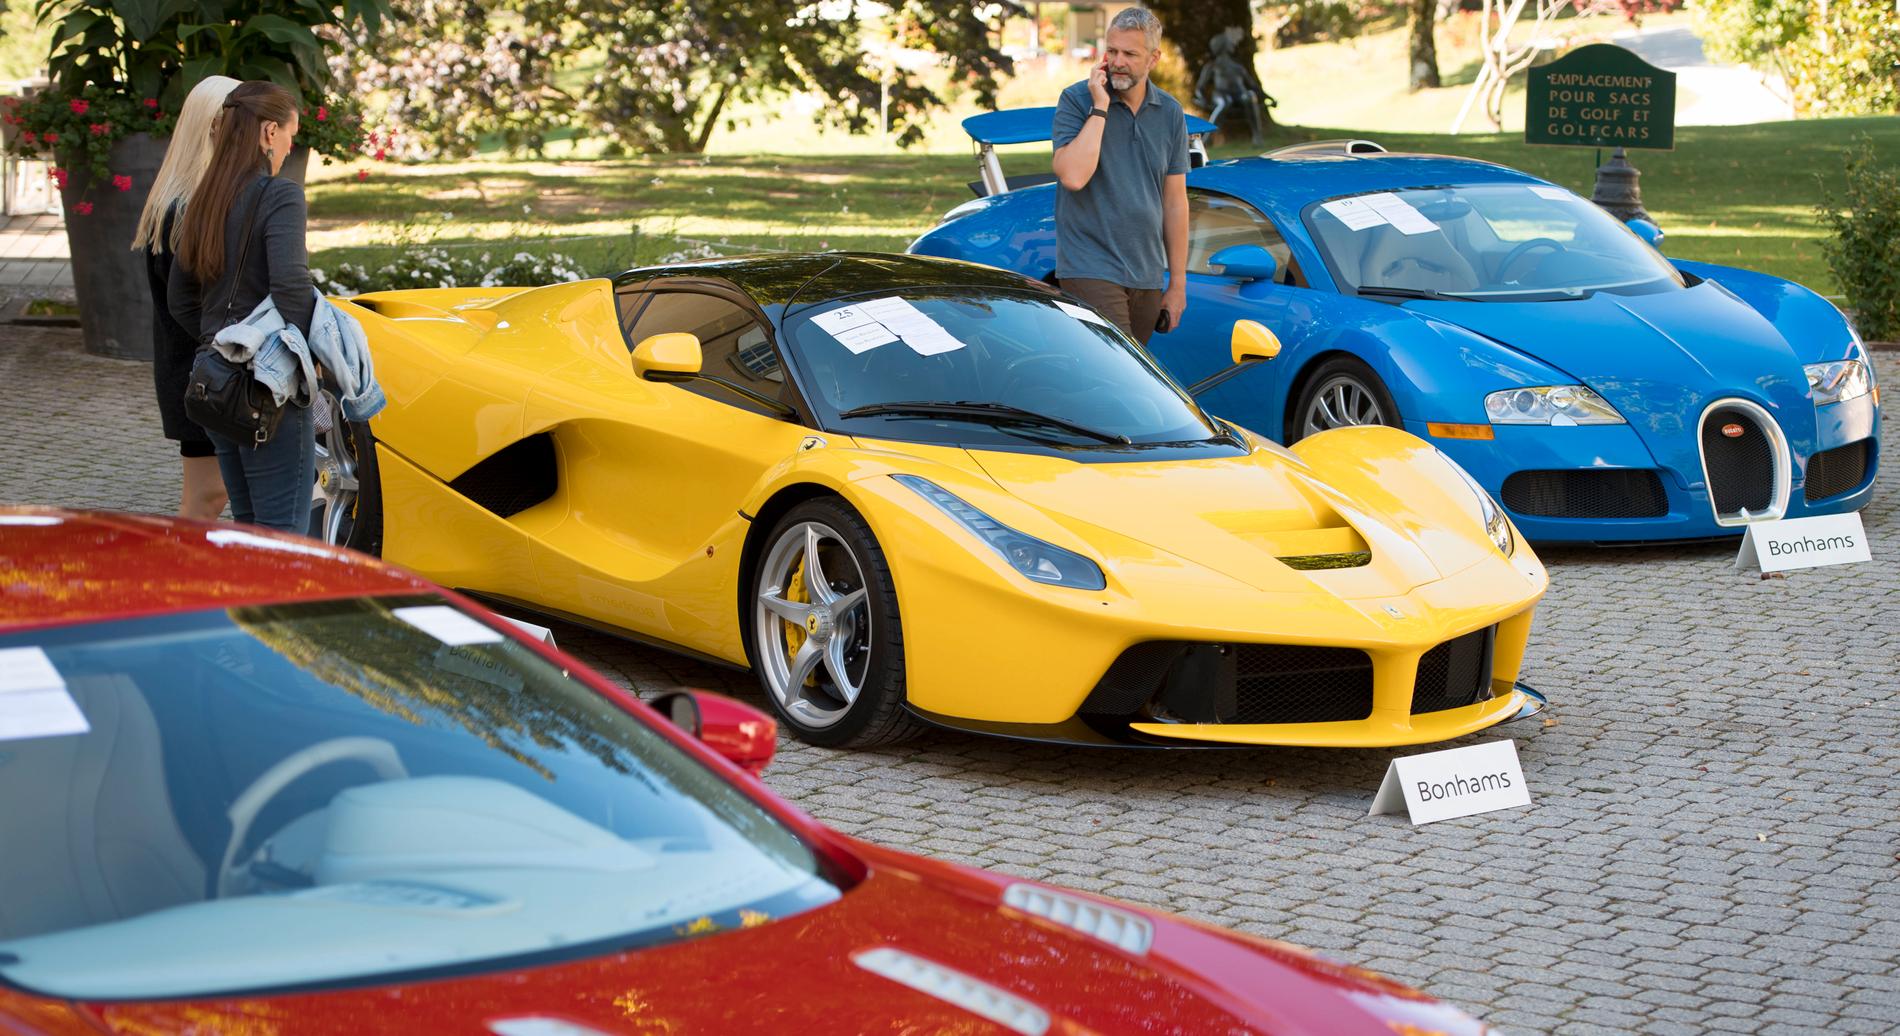 Den som köper en Ferrari i Sverige har i snitt redan fem andra bilar. Under pandemin har försäljningen exploderat.